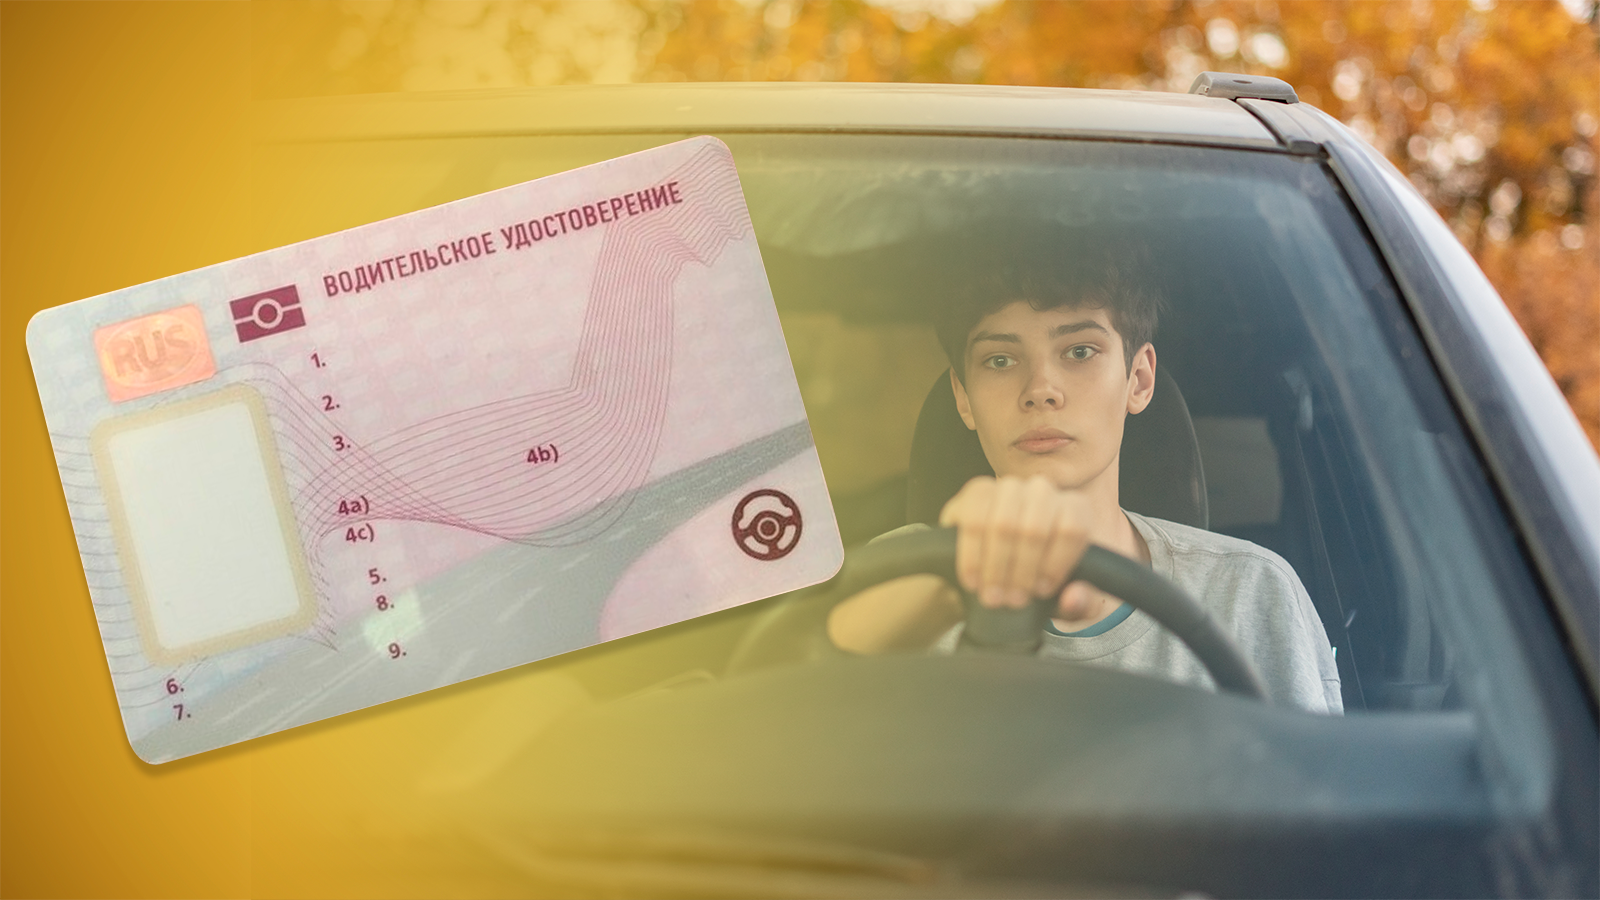 Правила получения водительских прав с 1 апреля. Картинки водительских прав. Фото с водительскими правами.